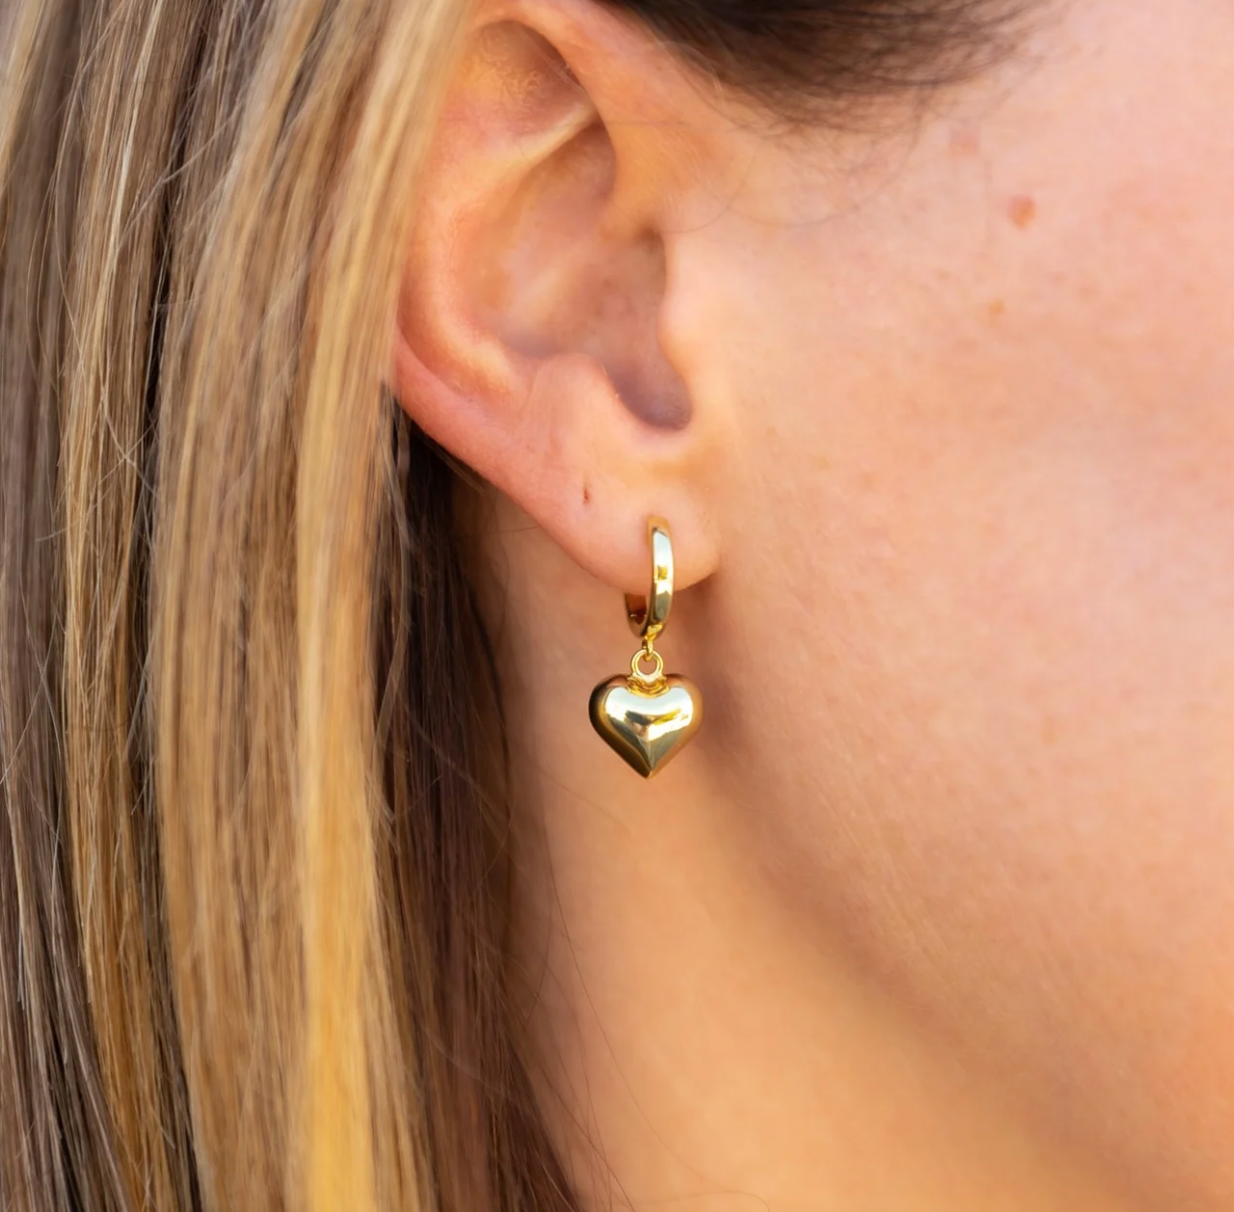 Love heart earrings